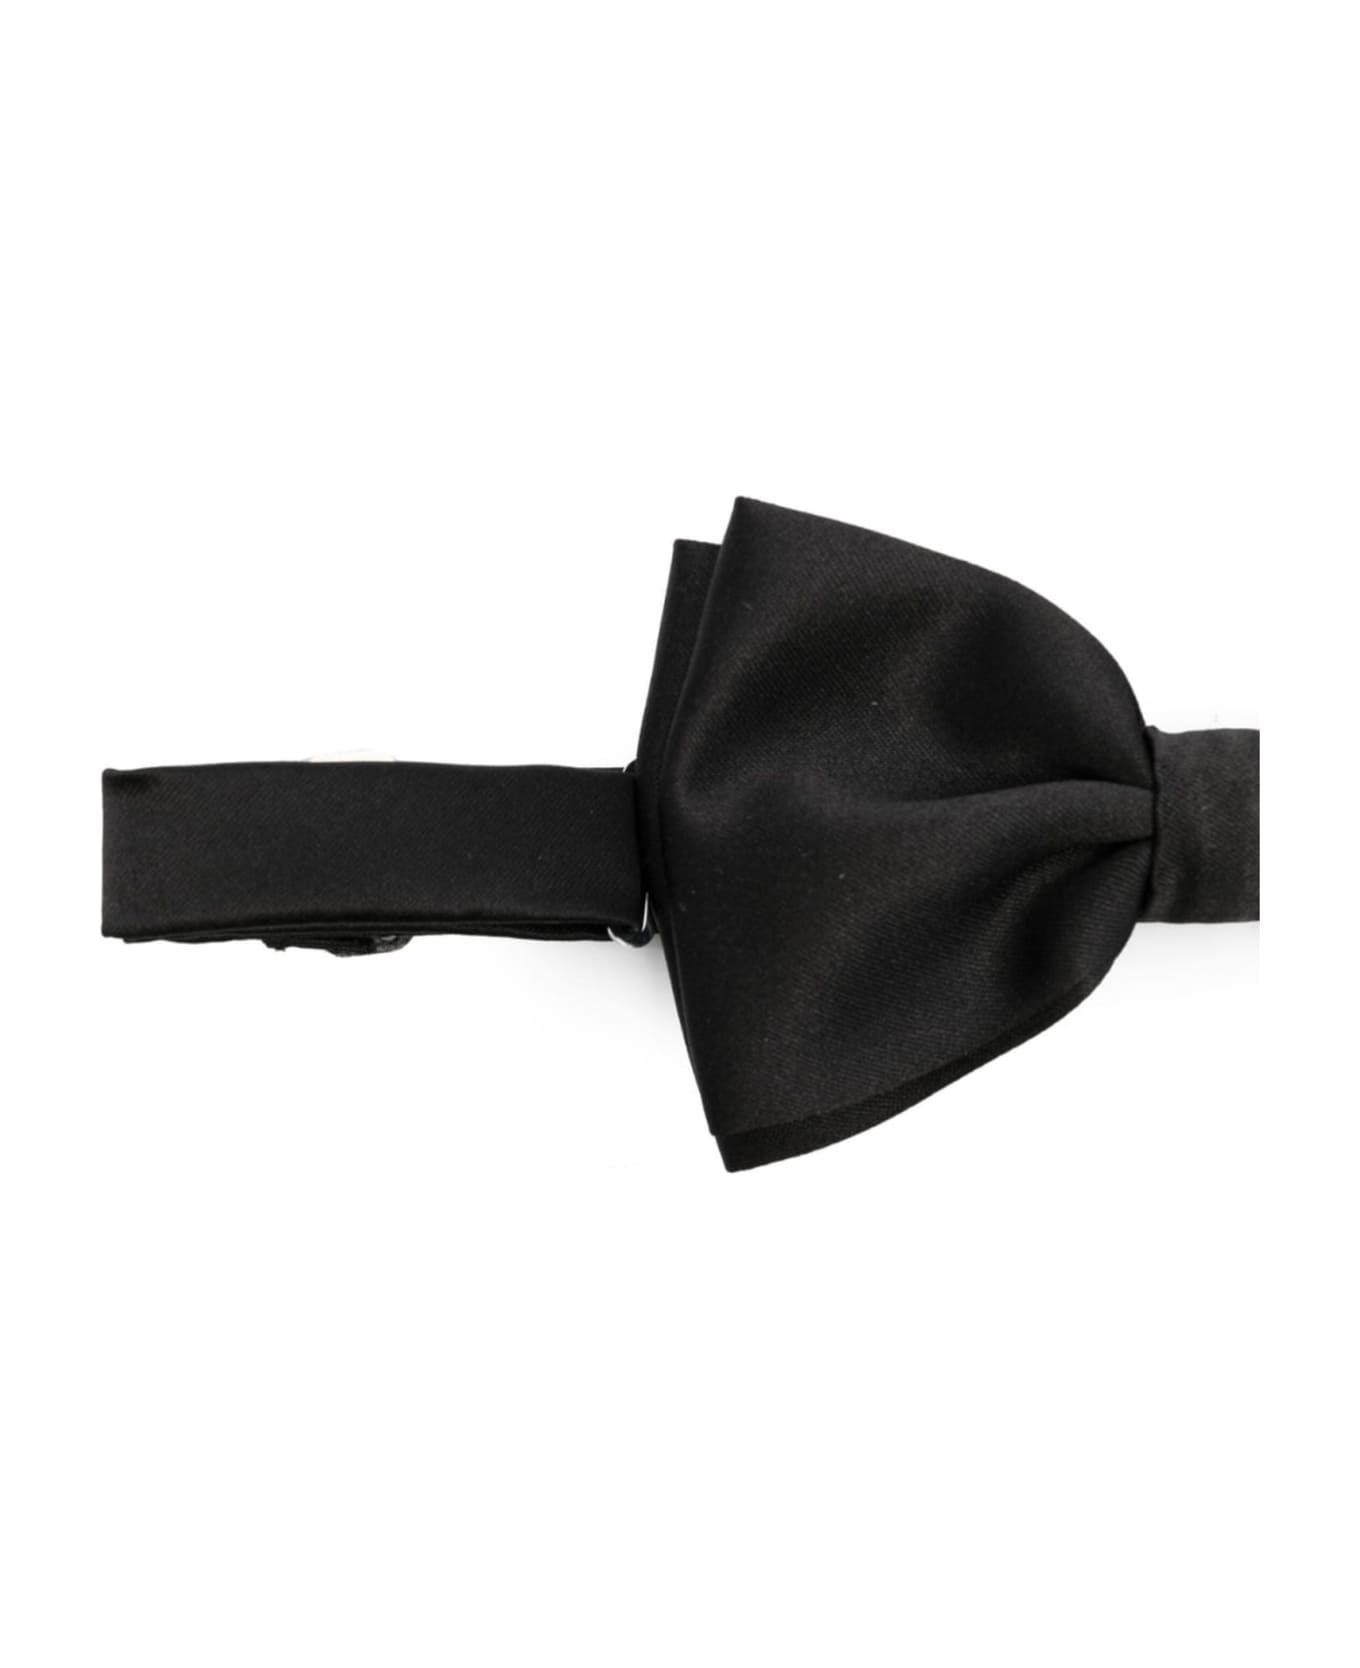 Tagliatore Black Papillon Bow Tie - Black